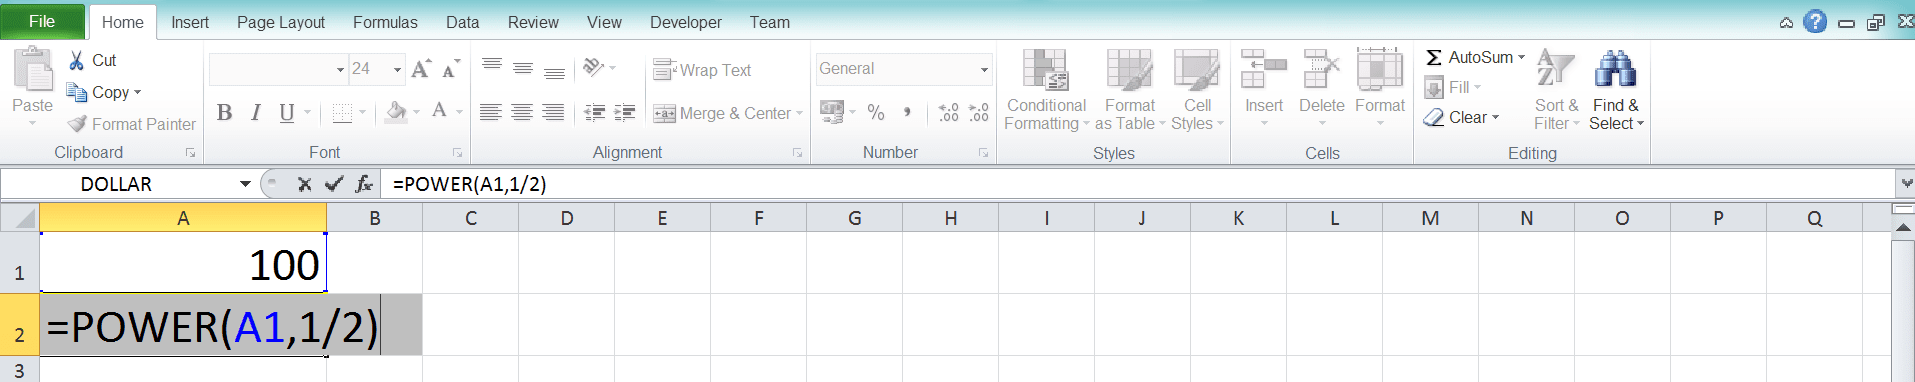 Cara Menghitung Akar di Excel Beserta Berbagai Rumus dan Fungsinya - Screenshot Langkah 2-6